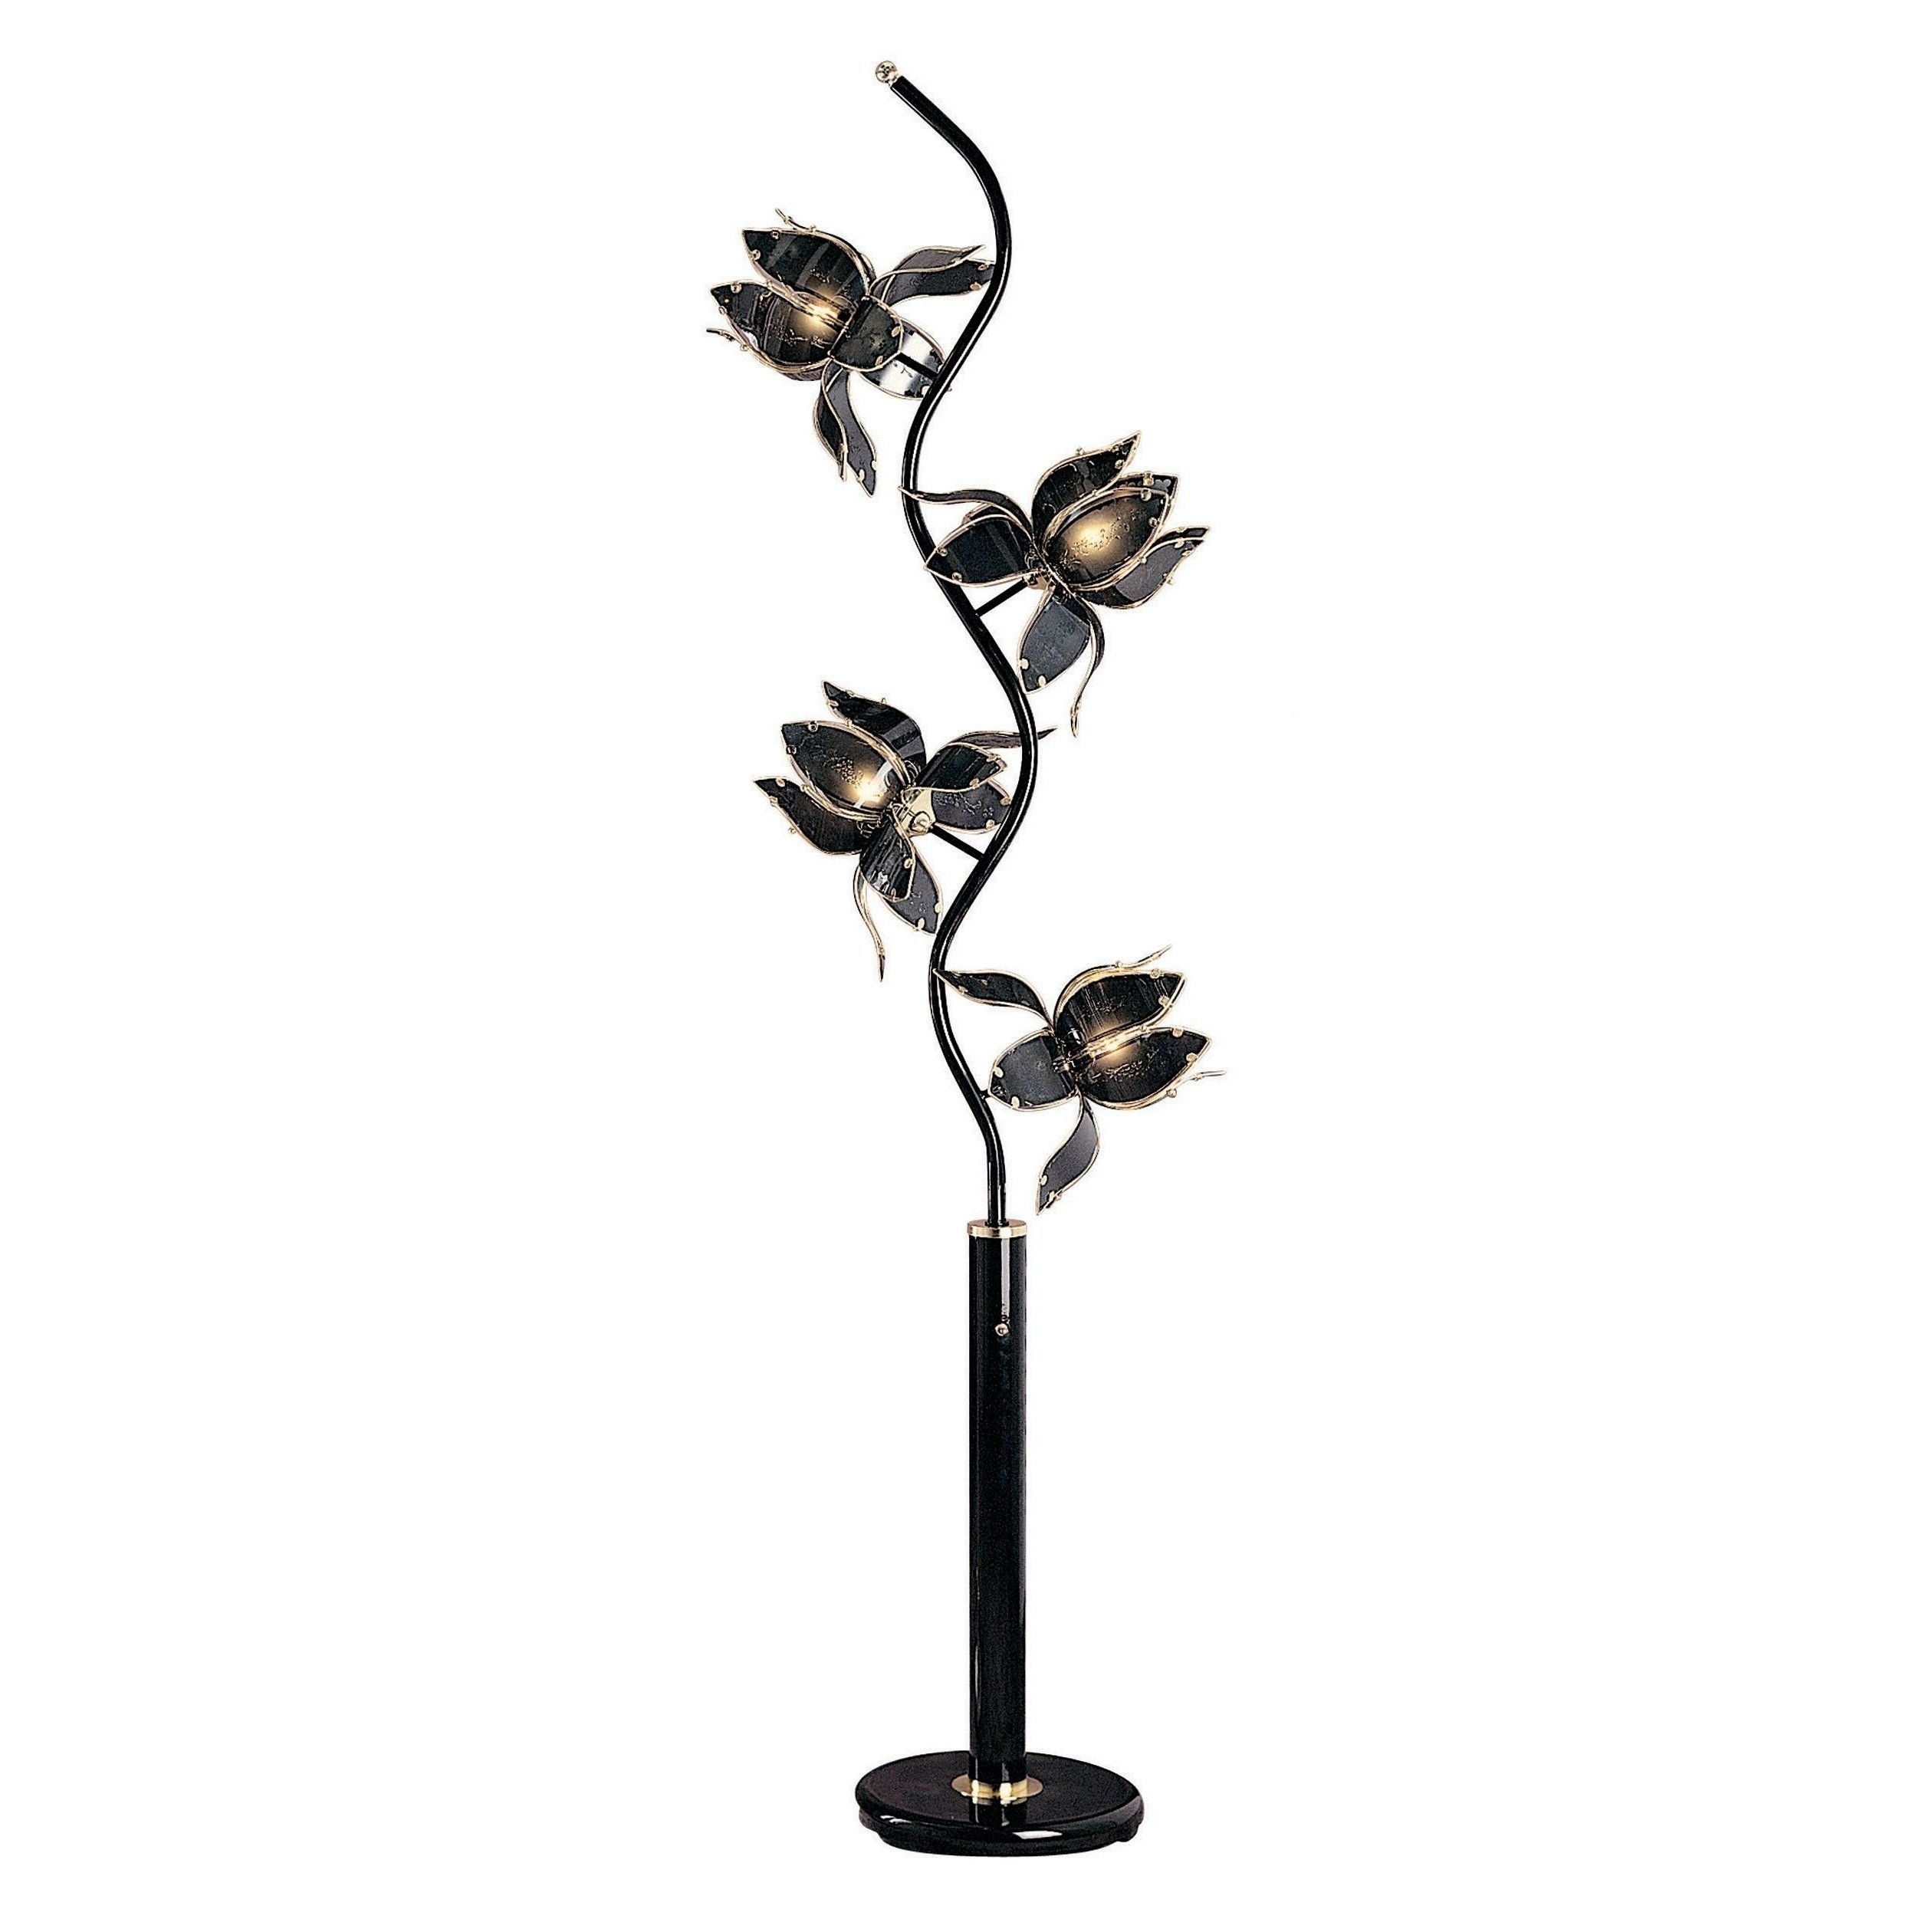 Flower Floor Lamps Intended For Favorite Flower Floor Lamp – Ideas On Foter (View 3 of 15)